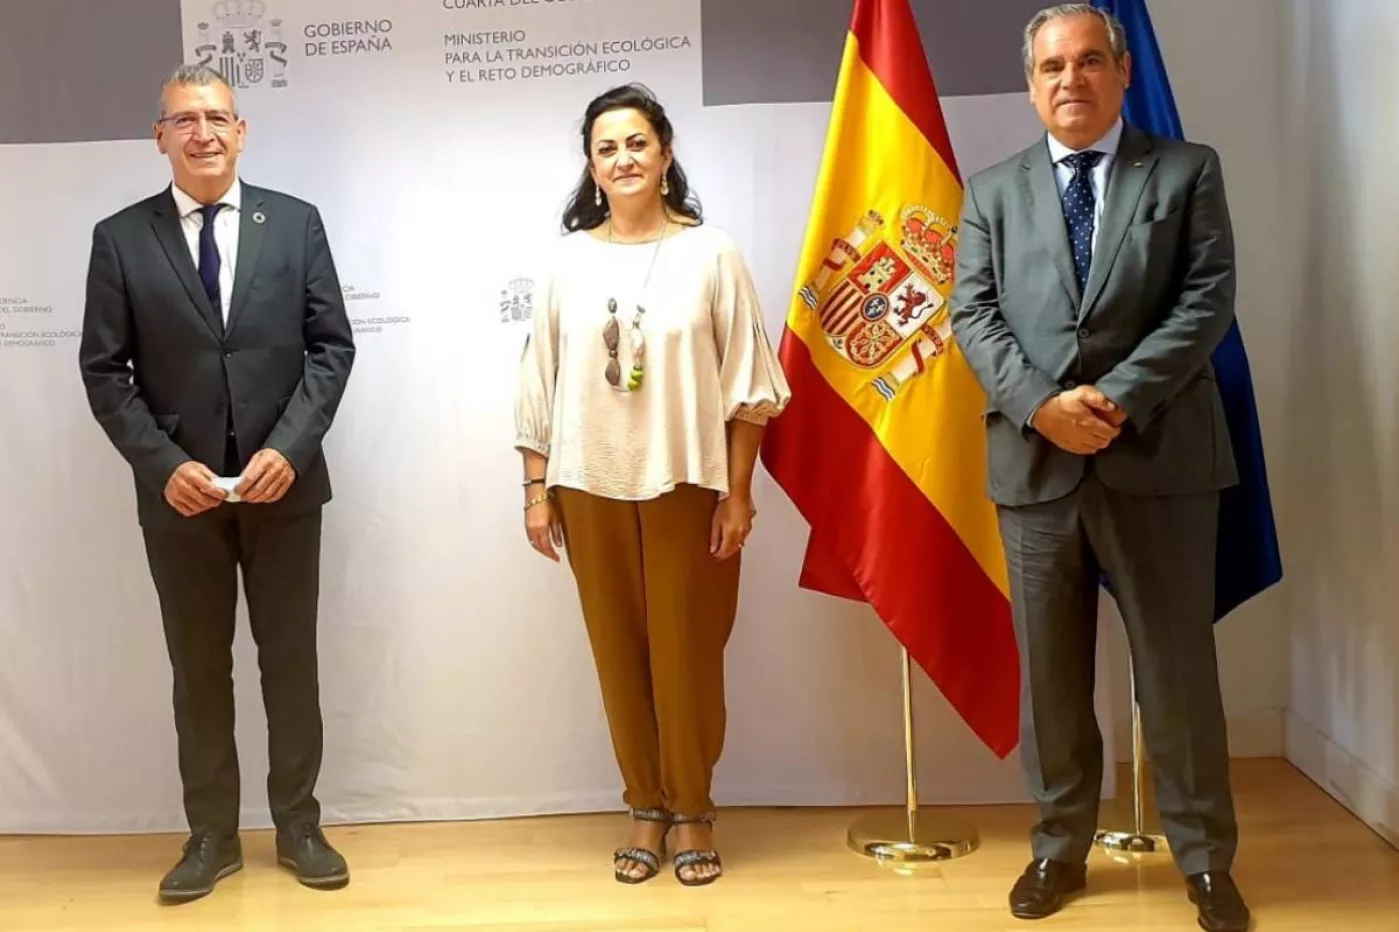 El Secretario General para el Reto Demográfico, Francisco Boya; la presidenta del Gobierno de La Rioja, Concha Andreu, y el presidente del Consejo General de COF, Jesús Aguilar.